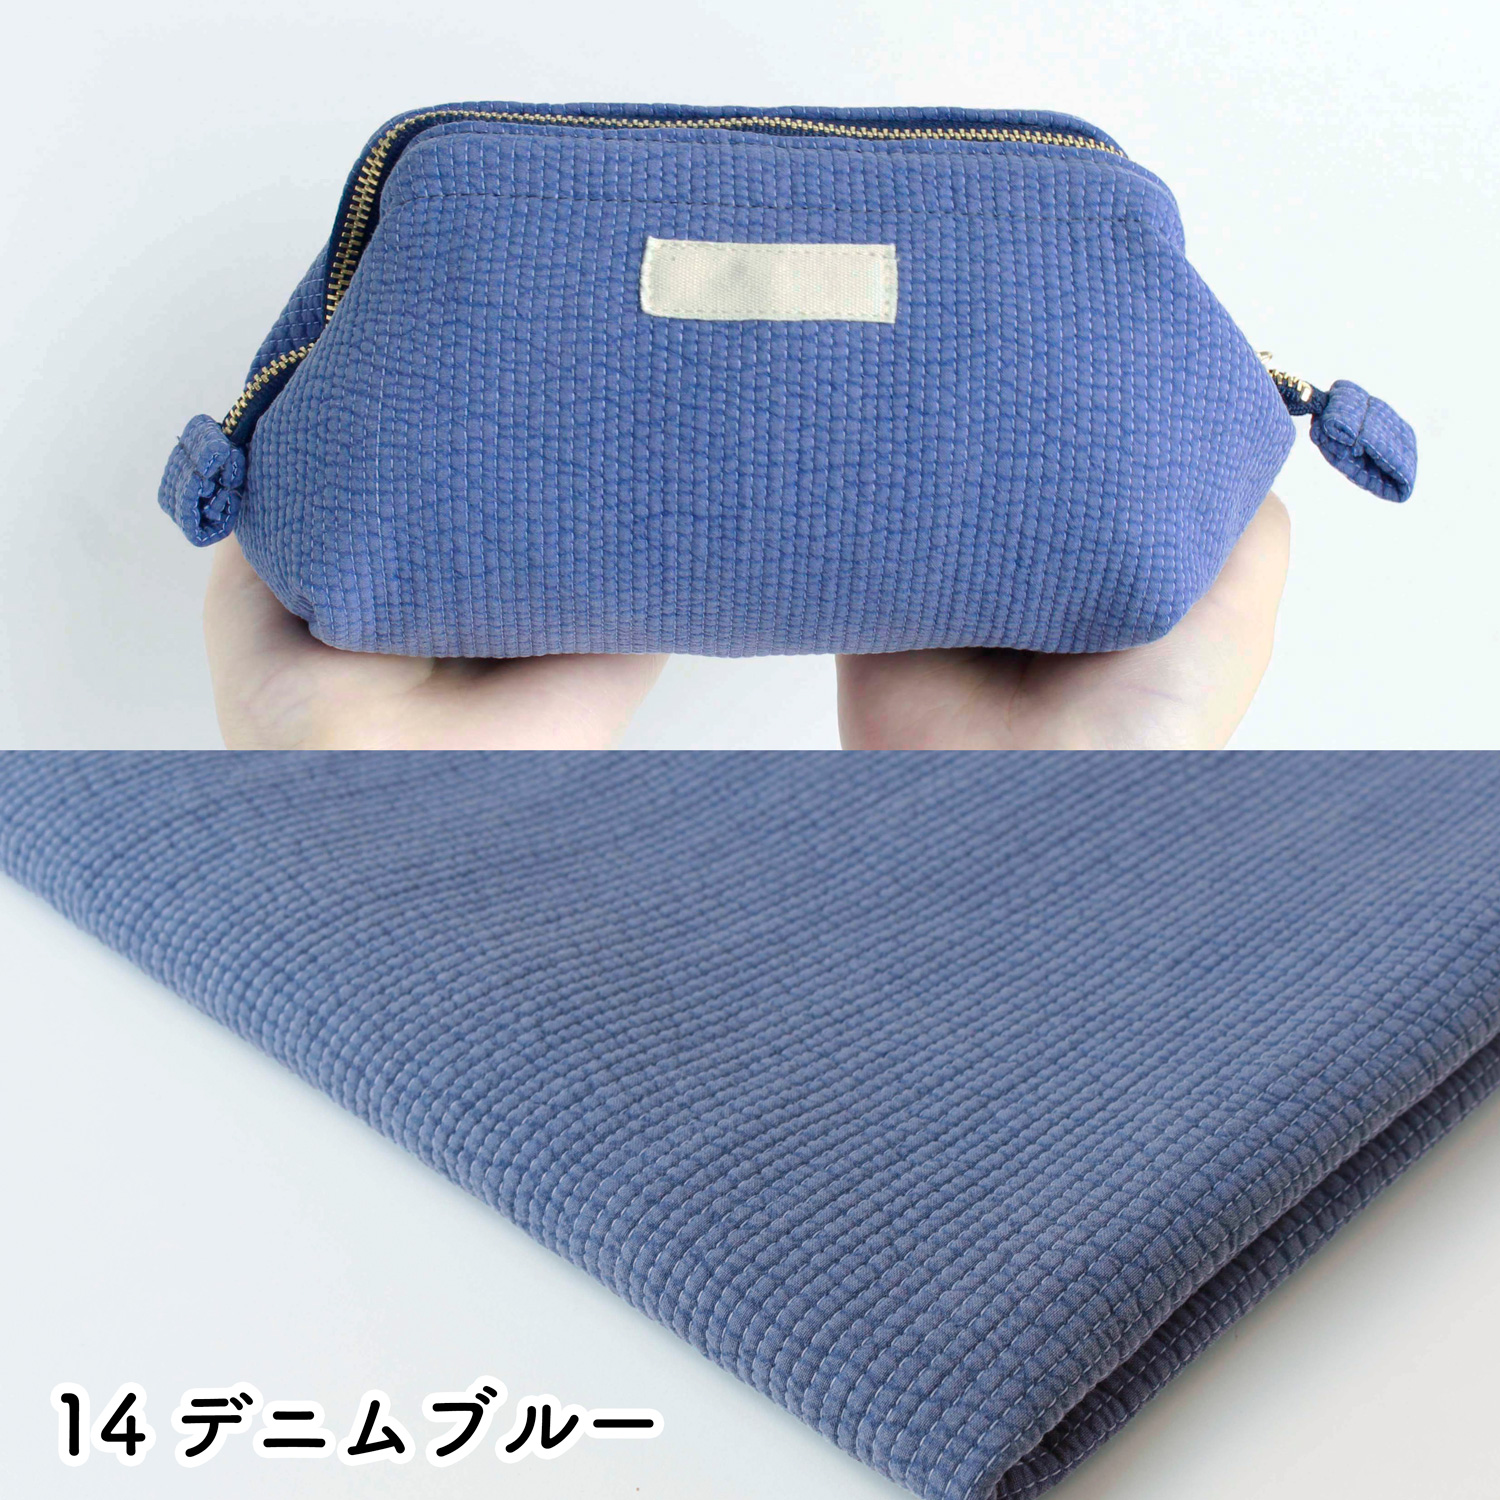 ■NBY303R nubi ヌビ 韓国伝統キルティング生地 巾3mmサイズ 原反約8m乱巻 (巻) 16